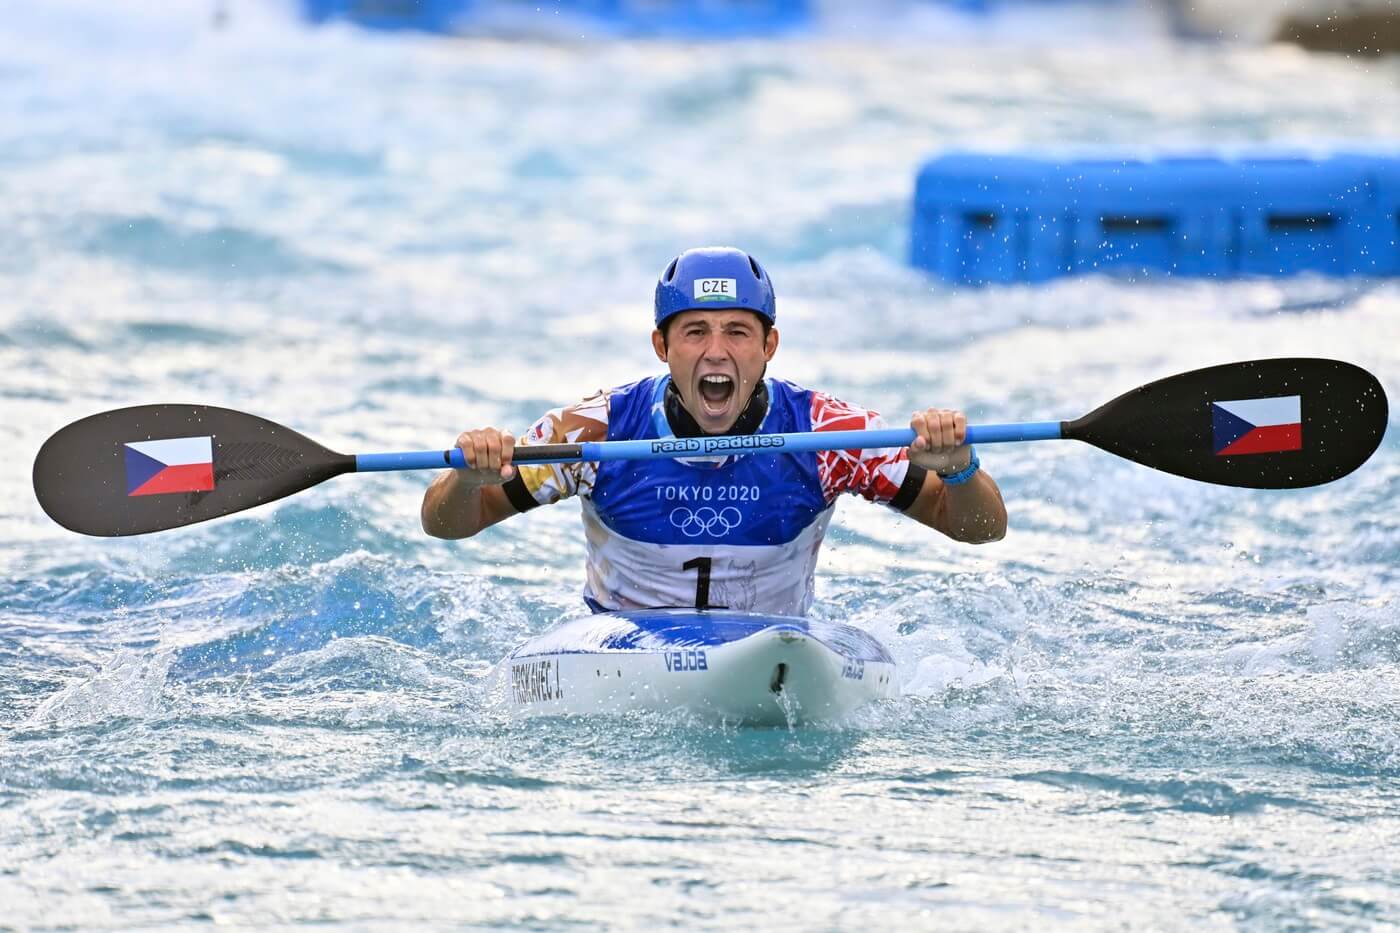 Vodní slalom na Letních olympijských hrách 2024, fotka z LOH 2020, kdy Jiří Prskavec získal zlatou medaili